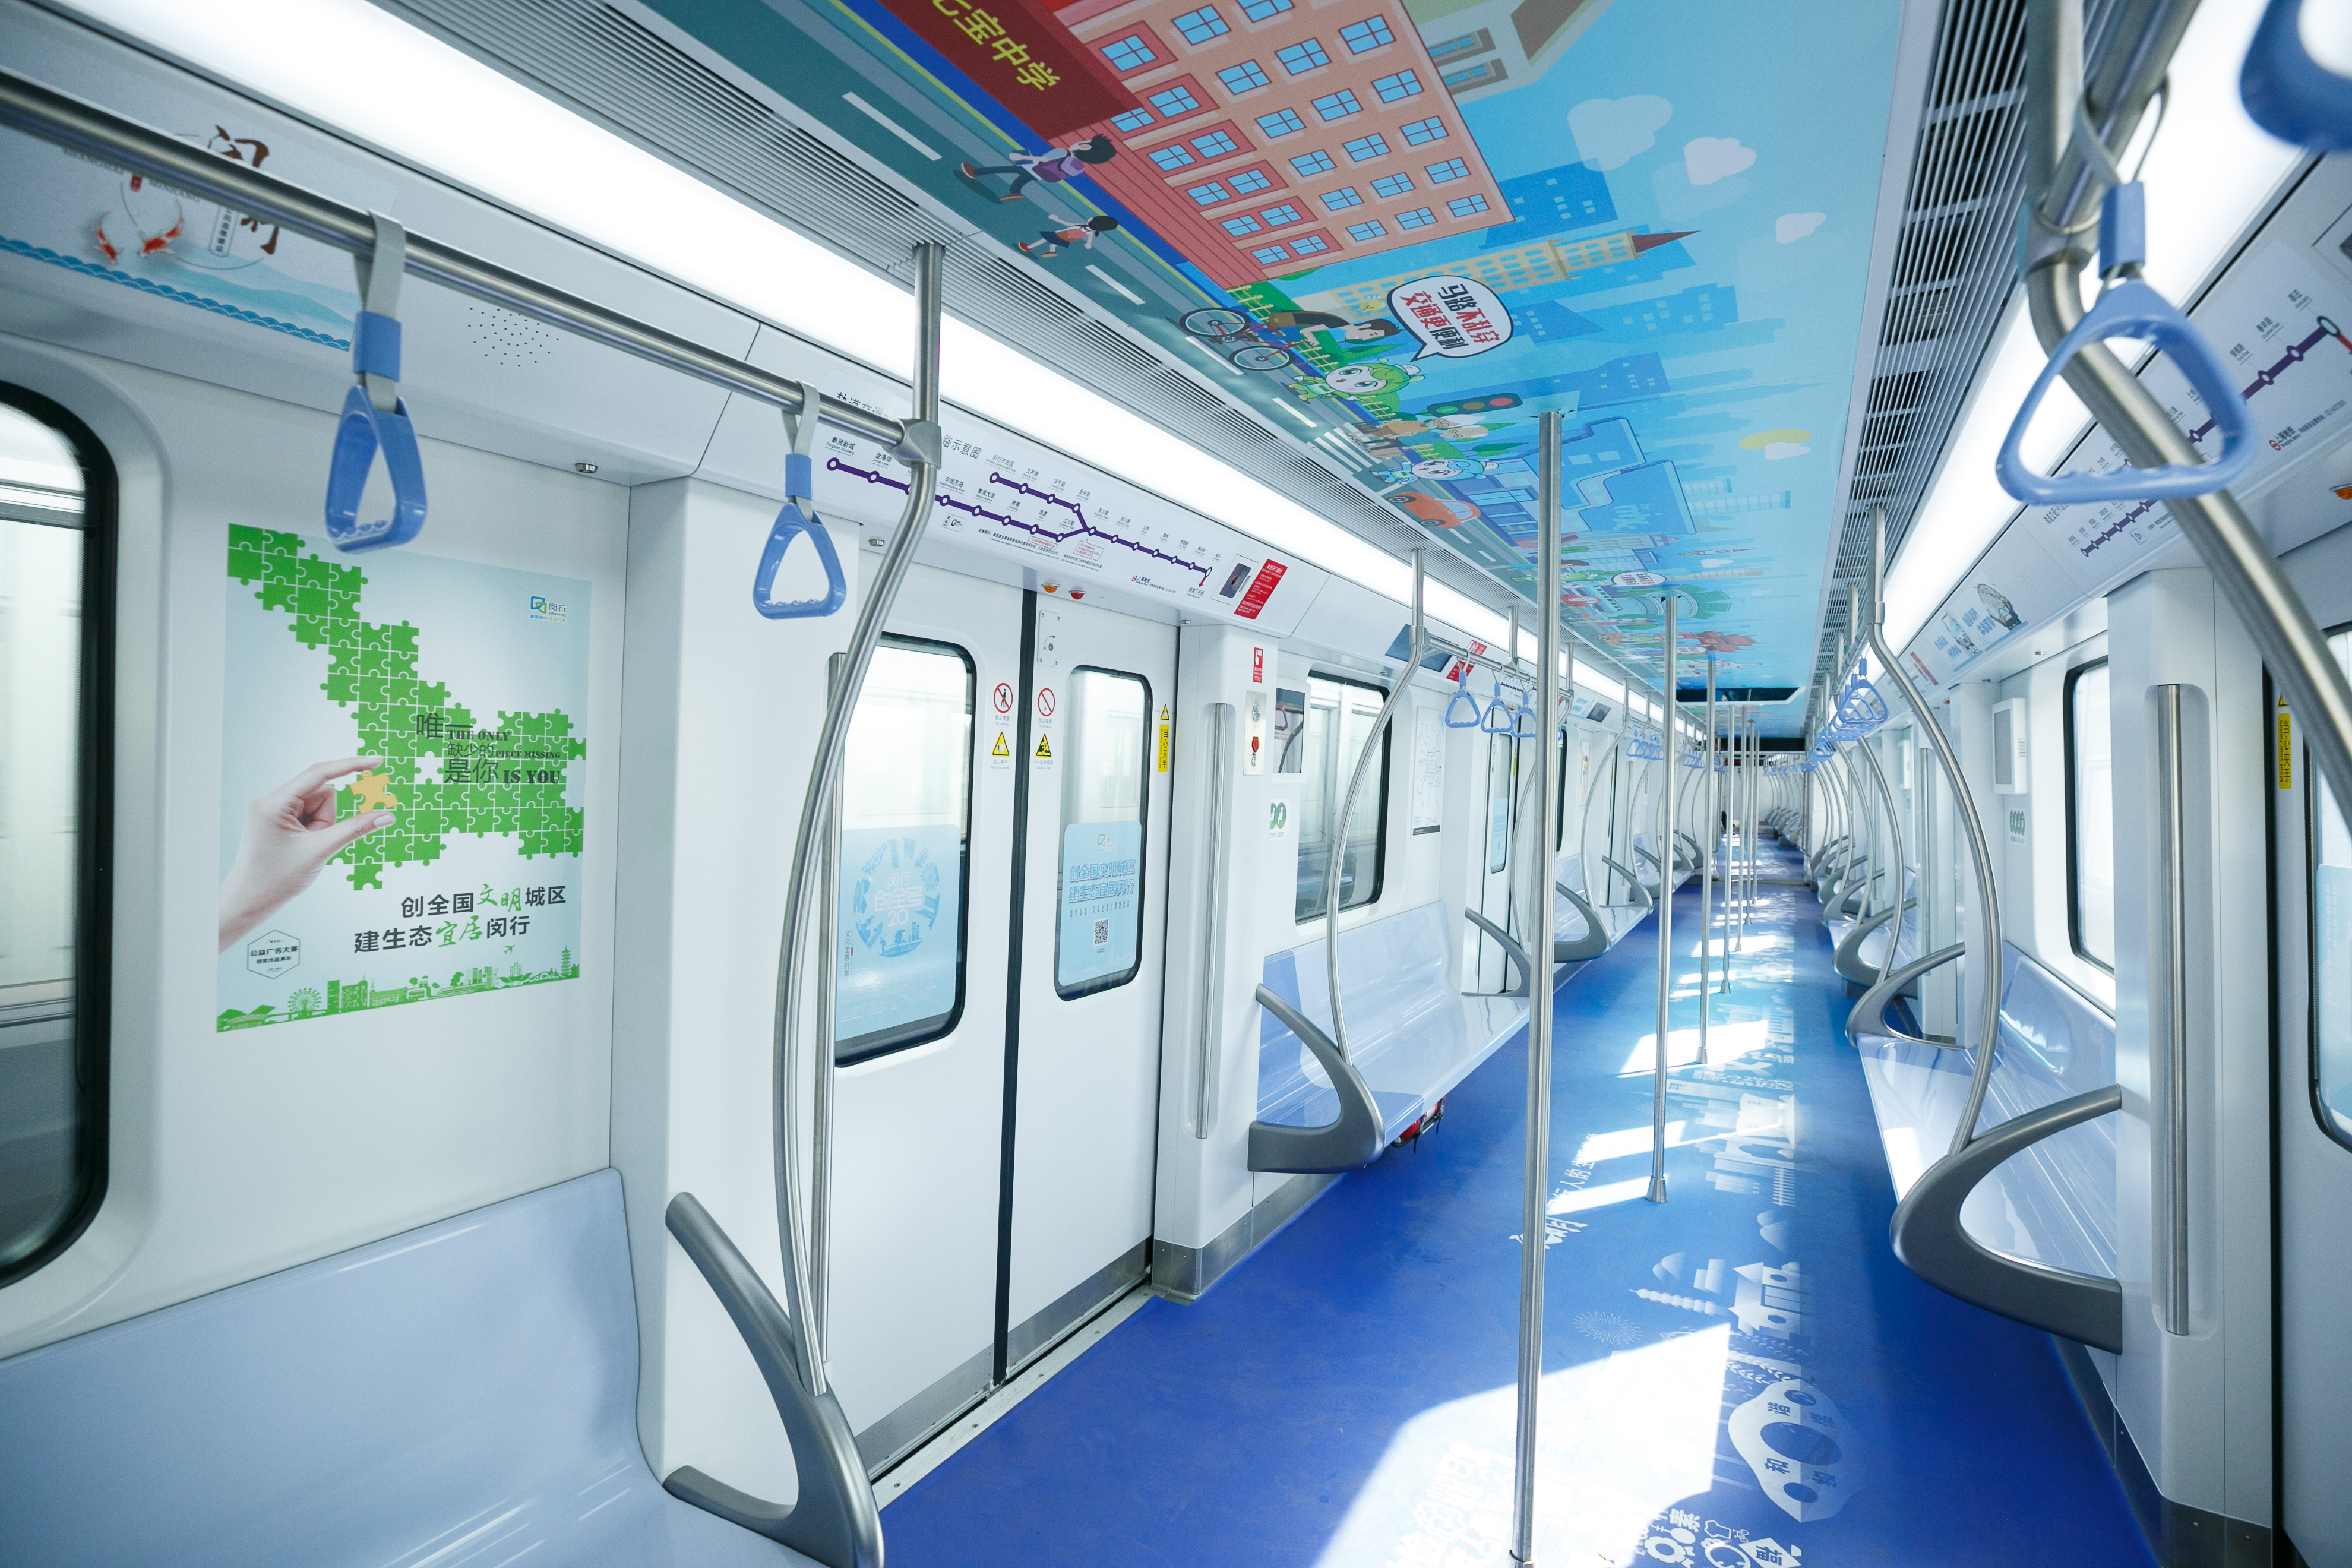 动起来的文明课堂:上海地铁5号线闵行文化 主题列车接连上线